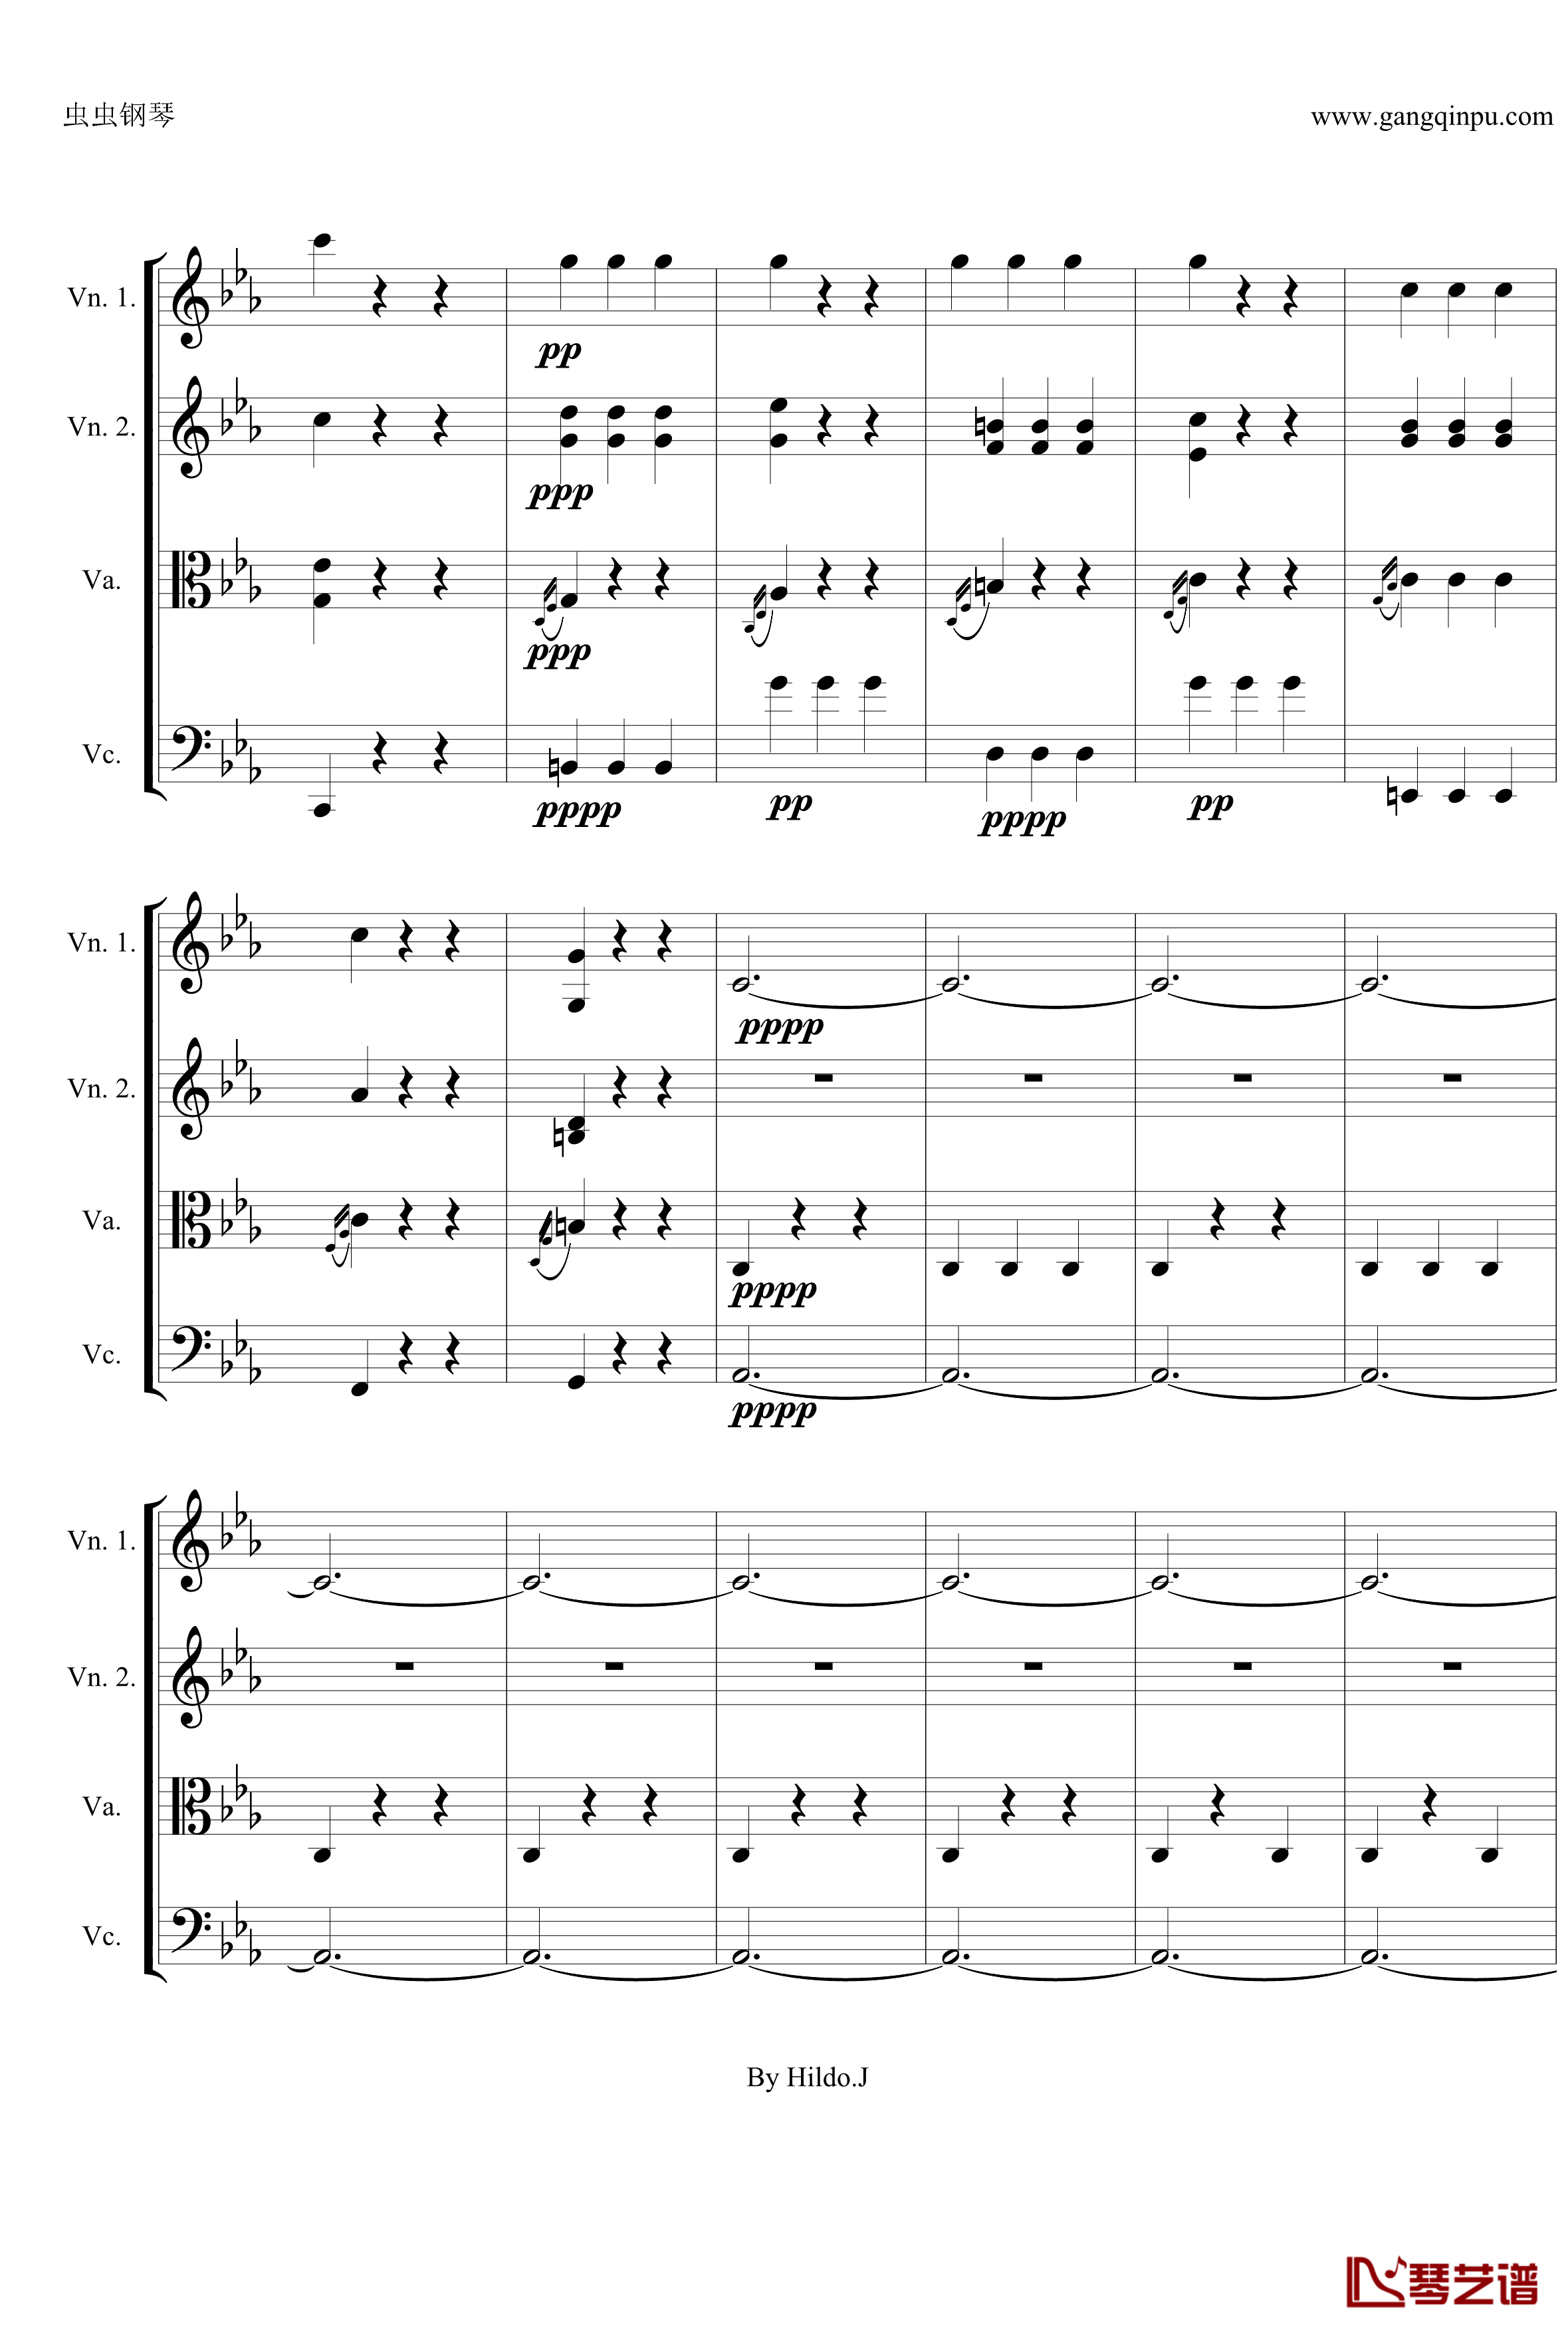 命运交响曲第三乐章钢琴谱-弦乐版-贝多芬-beethoven21